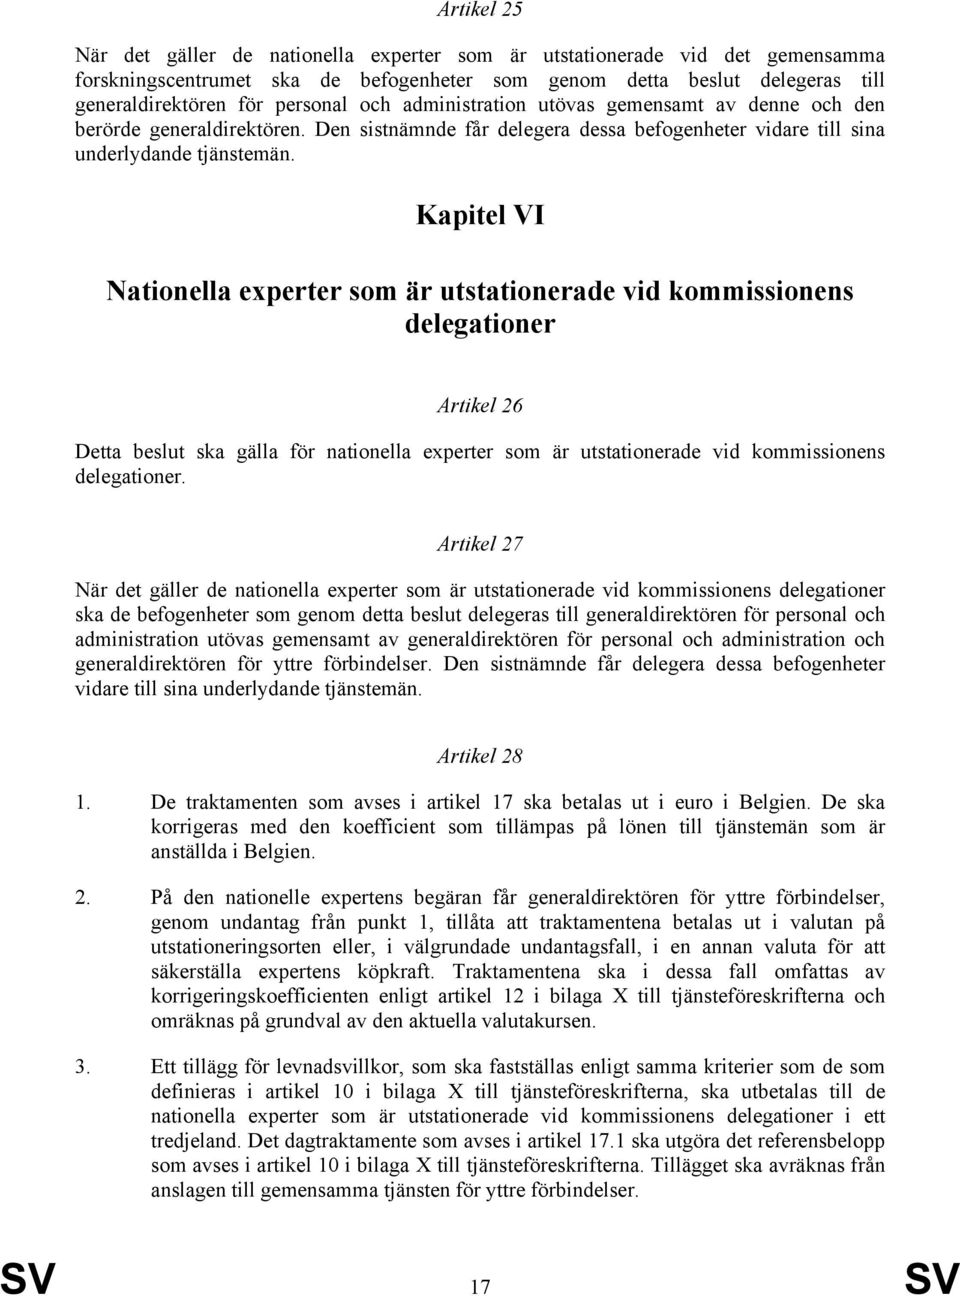 Kapitel VI Nationella experter som är utstationerade vid kommissionens delegationer Artikel 26 Detta beslut ska gälla för nationella experter som är utstationerade vid kommissionens delegationer.